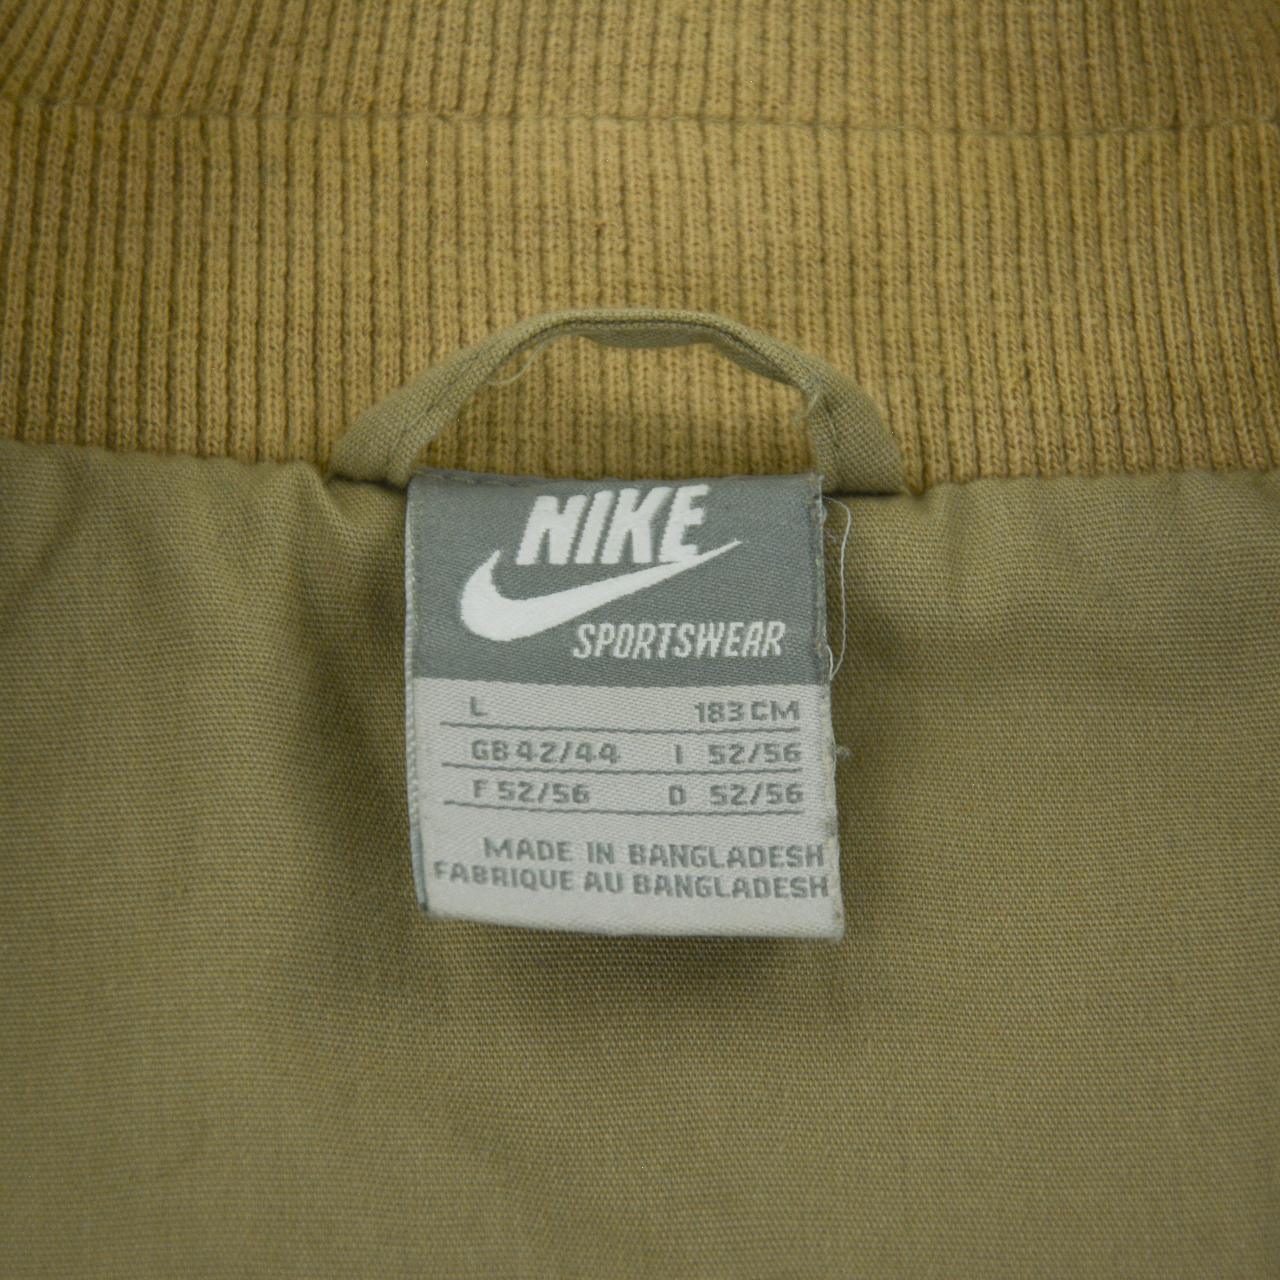 Vintage Nike Sportswear Jacket Size L - Known Source